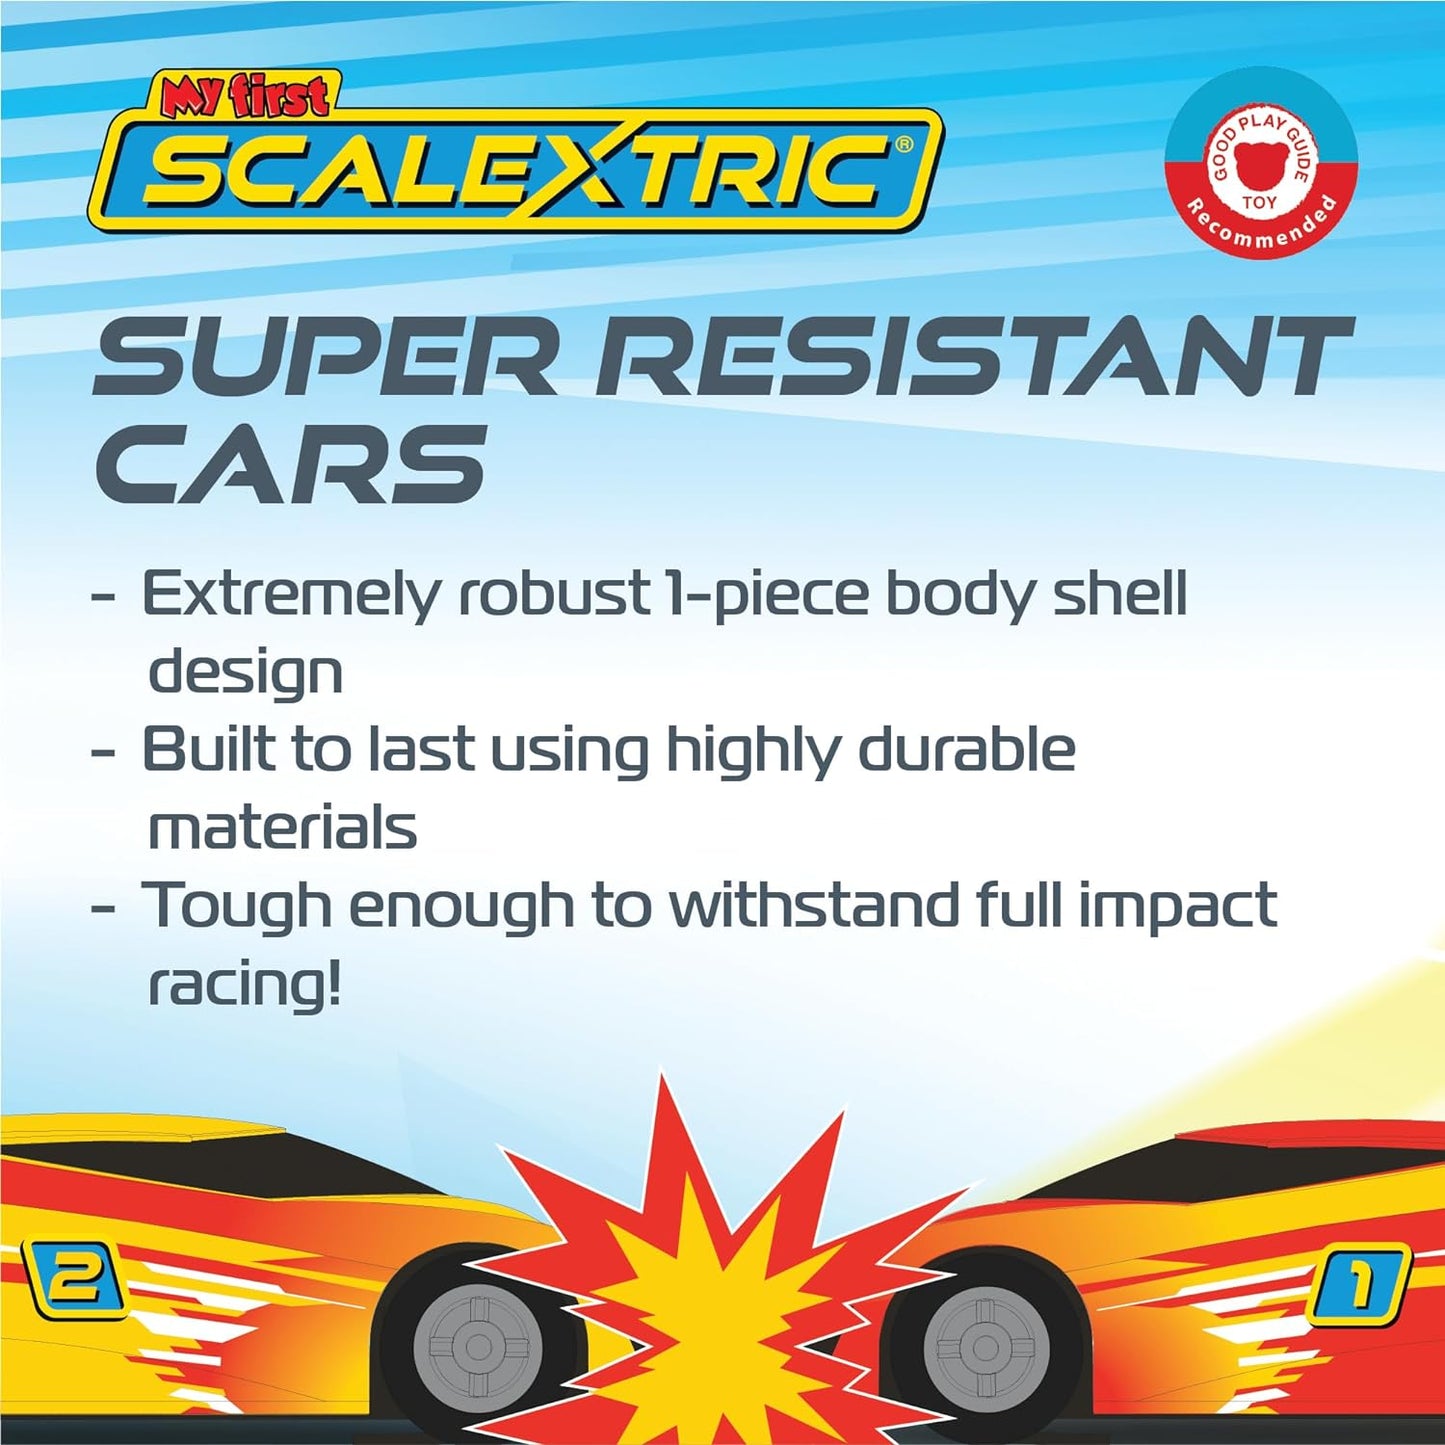 Scalextric My First - Conjuntos de corrida movidos a bateria - Pistas de corrida de Slot Car para crianças de 3 anos ou mais, inclui 1 conjunto de pistas, 1 carro vermelho, 1 carro amarelo, 1 base de bateria, 2 controladores de limite de velocidade